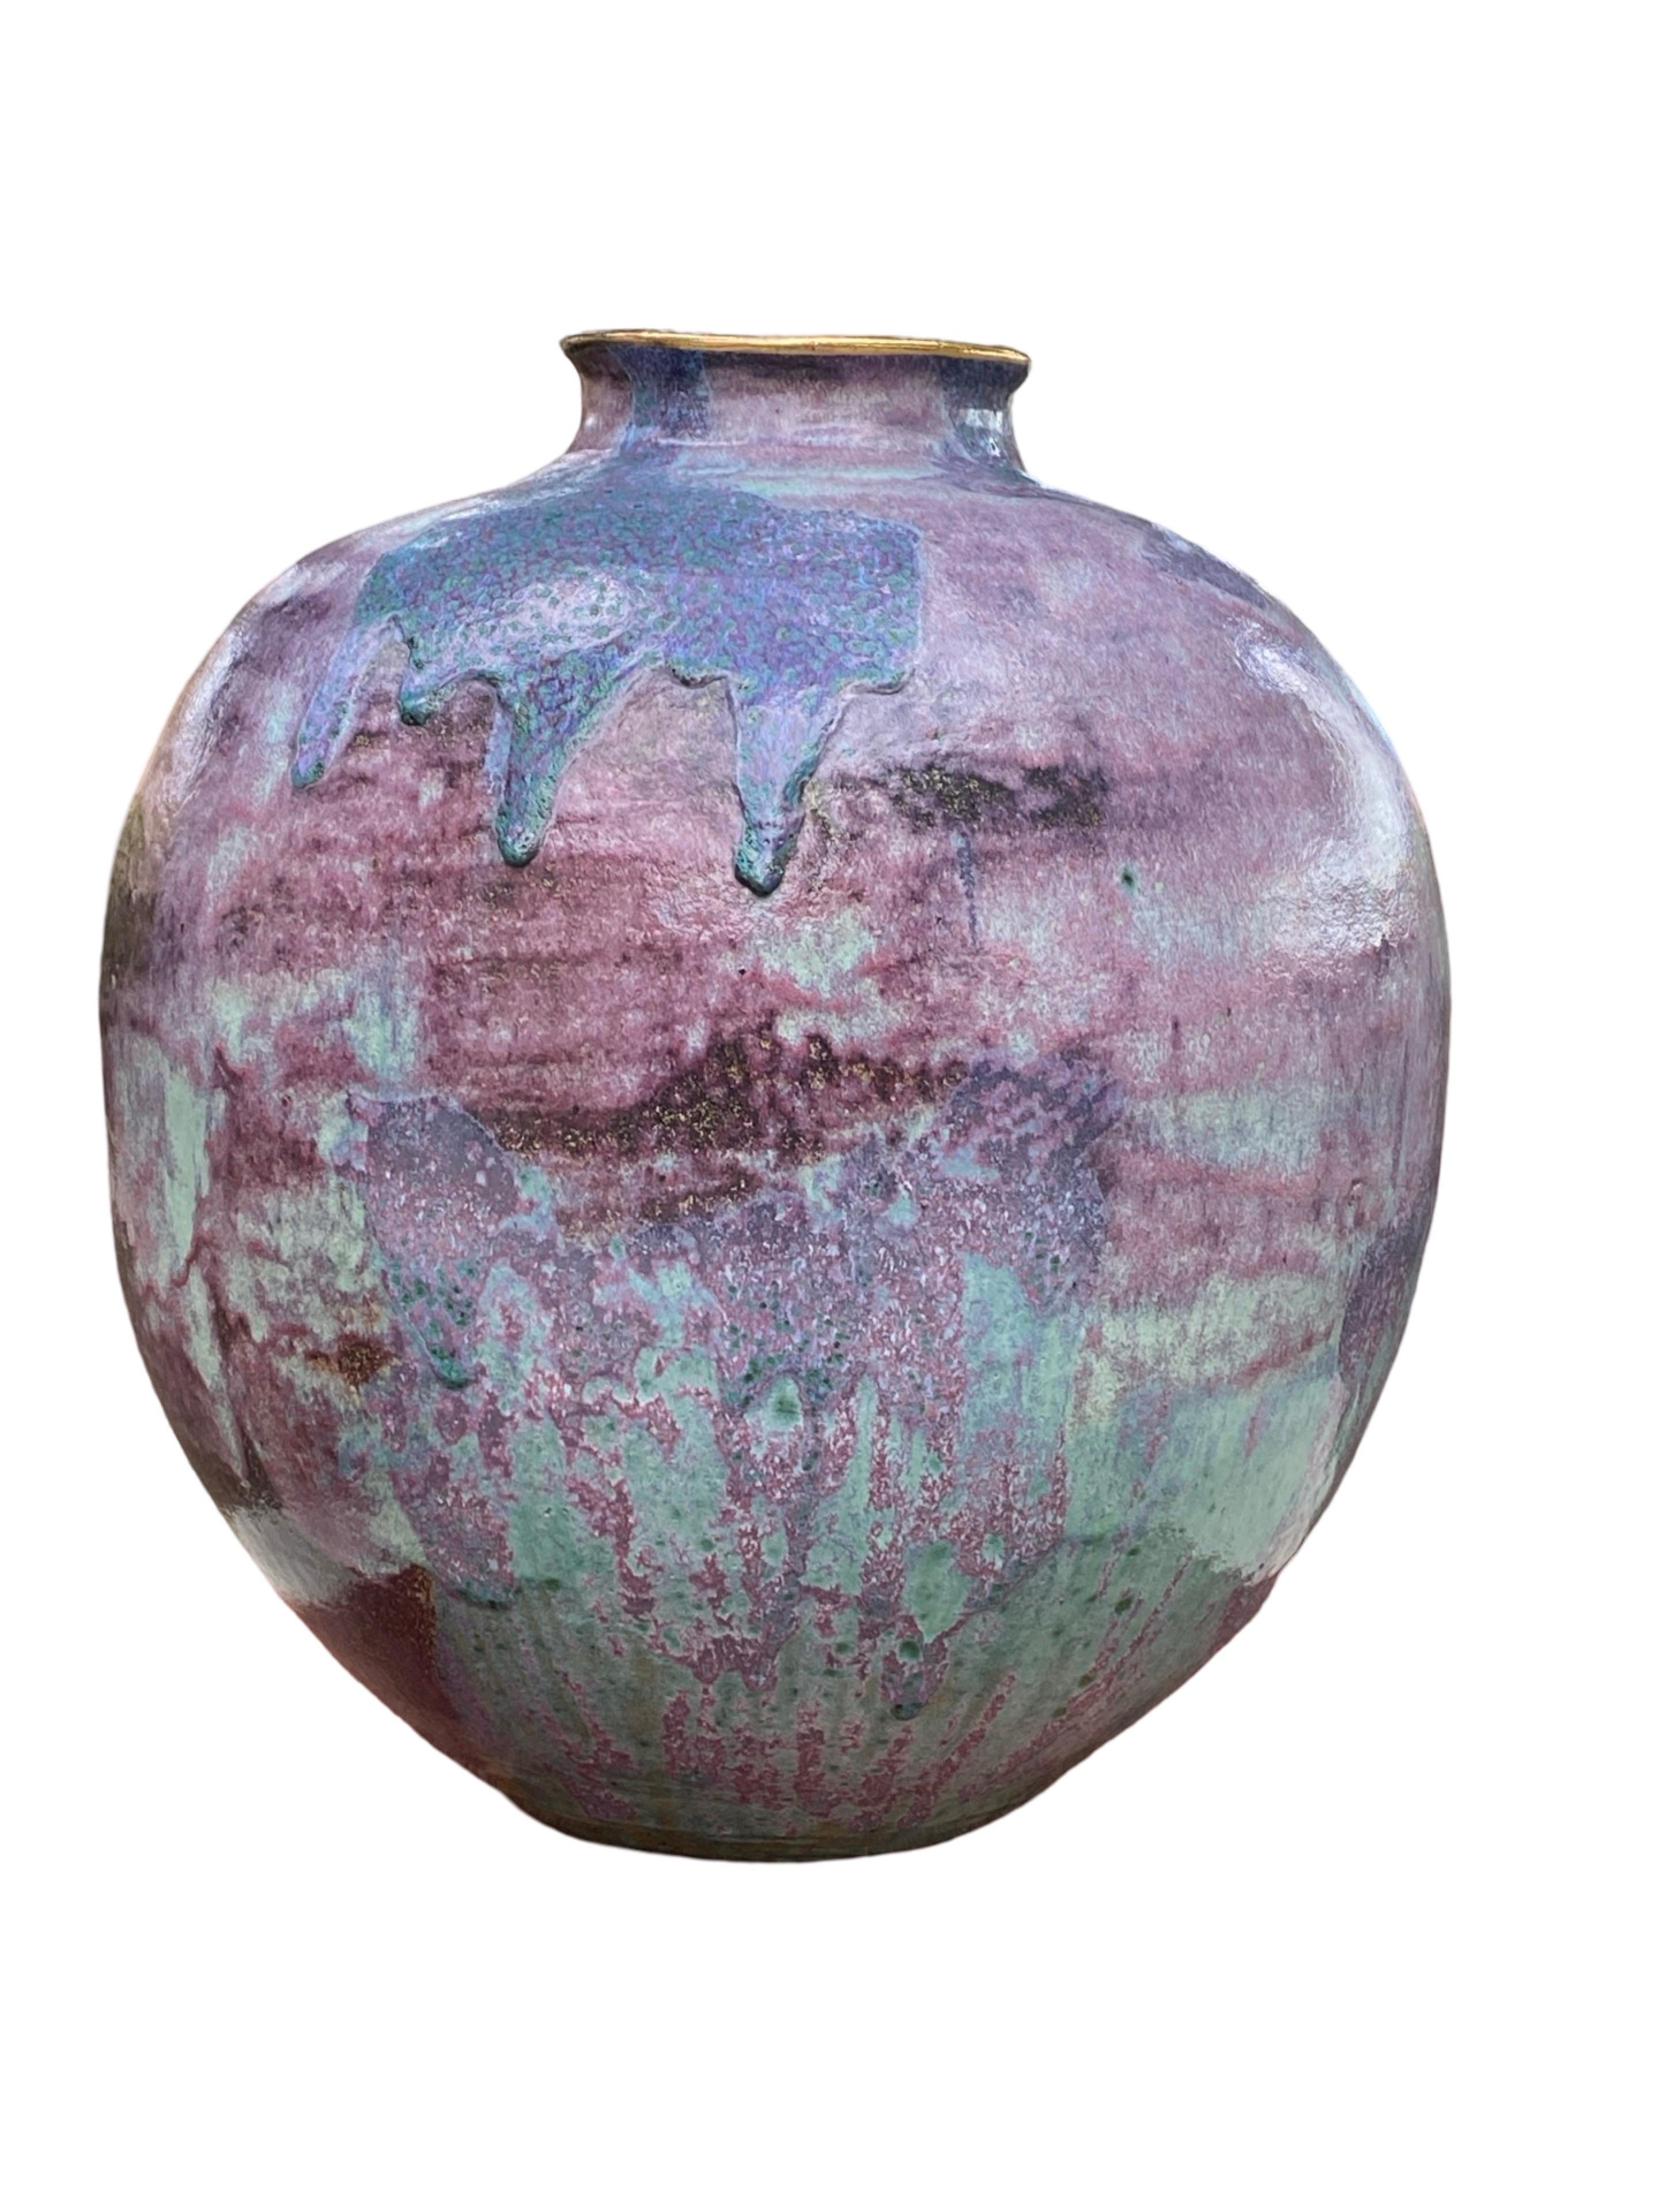 Glazed Ceramic Custom Made Large Urn 1980s Purple, Lavender & Teal Glaze Gold Trim For Sale